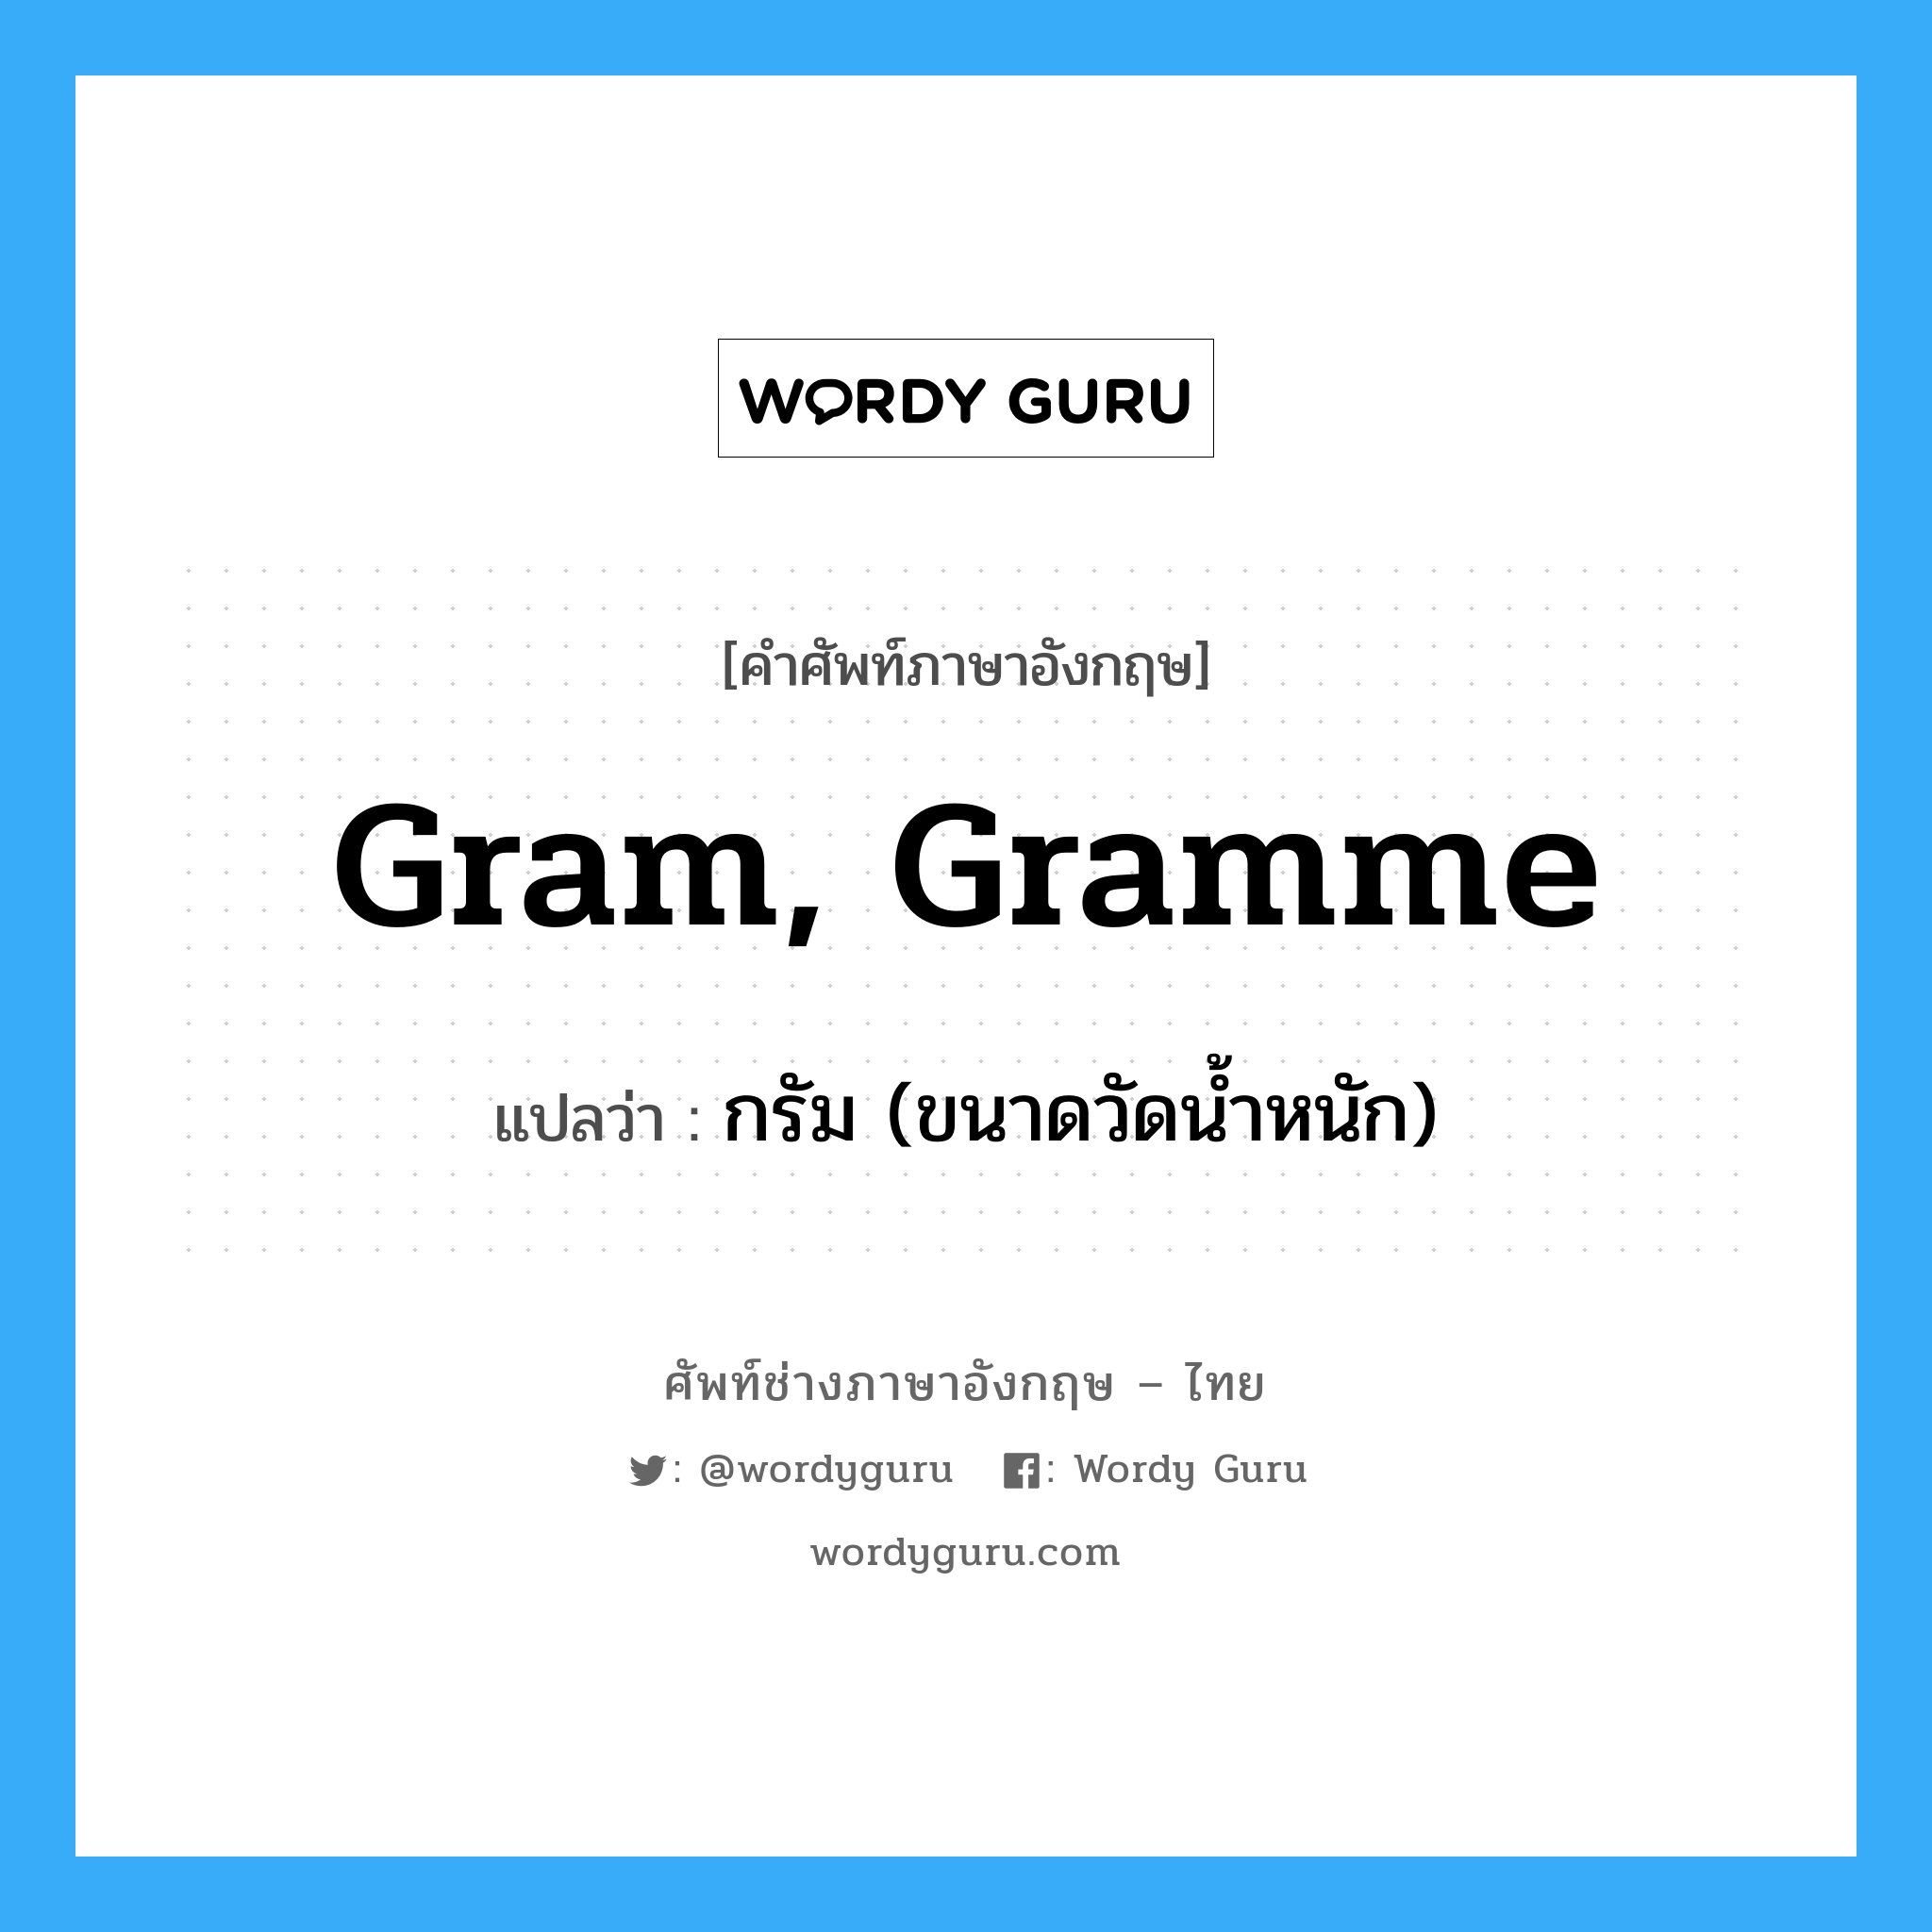 gram, gramme แปลว่า?, คำศัพท์ช่างภาษาอังกฤษ - ไทย gram, gramme คำศัพท์ภาษาอังกฤษ gram, gramme แปลว่า กรัม (ขนาดวัดน้ำหนัก)